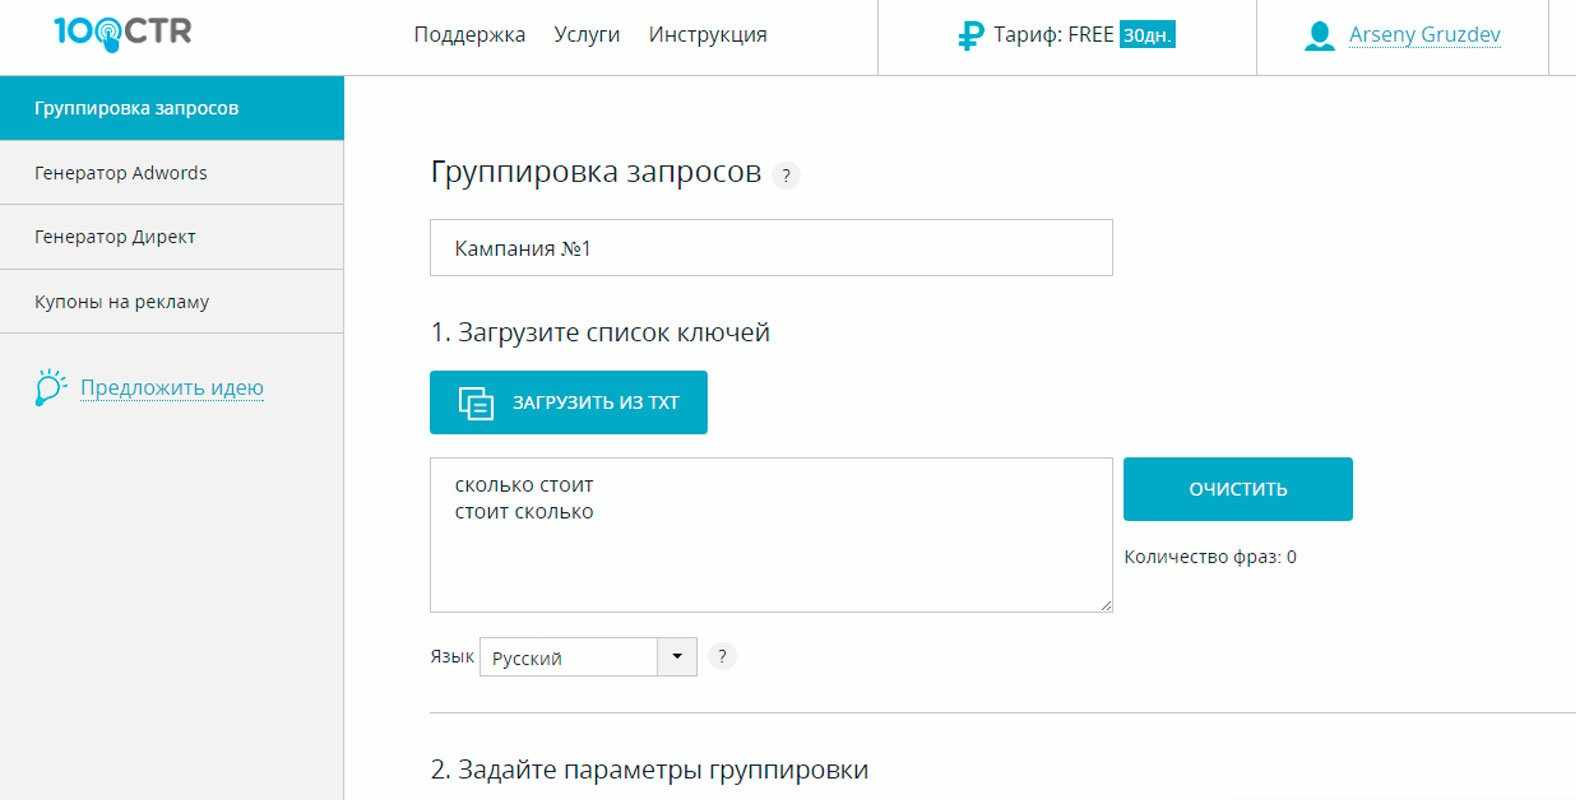 Группировка запросов Яндекс Директ и Google Adwords